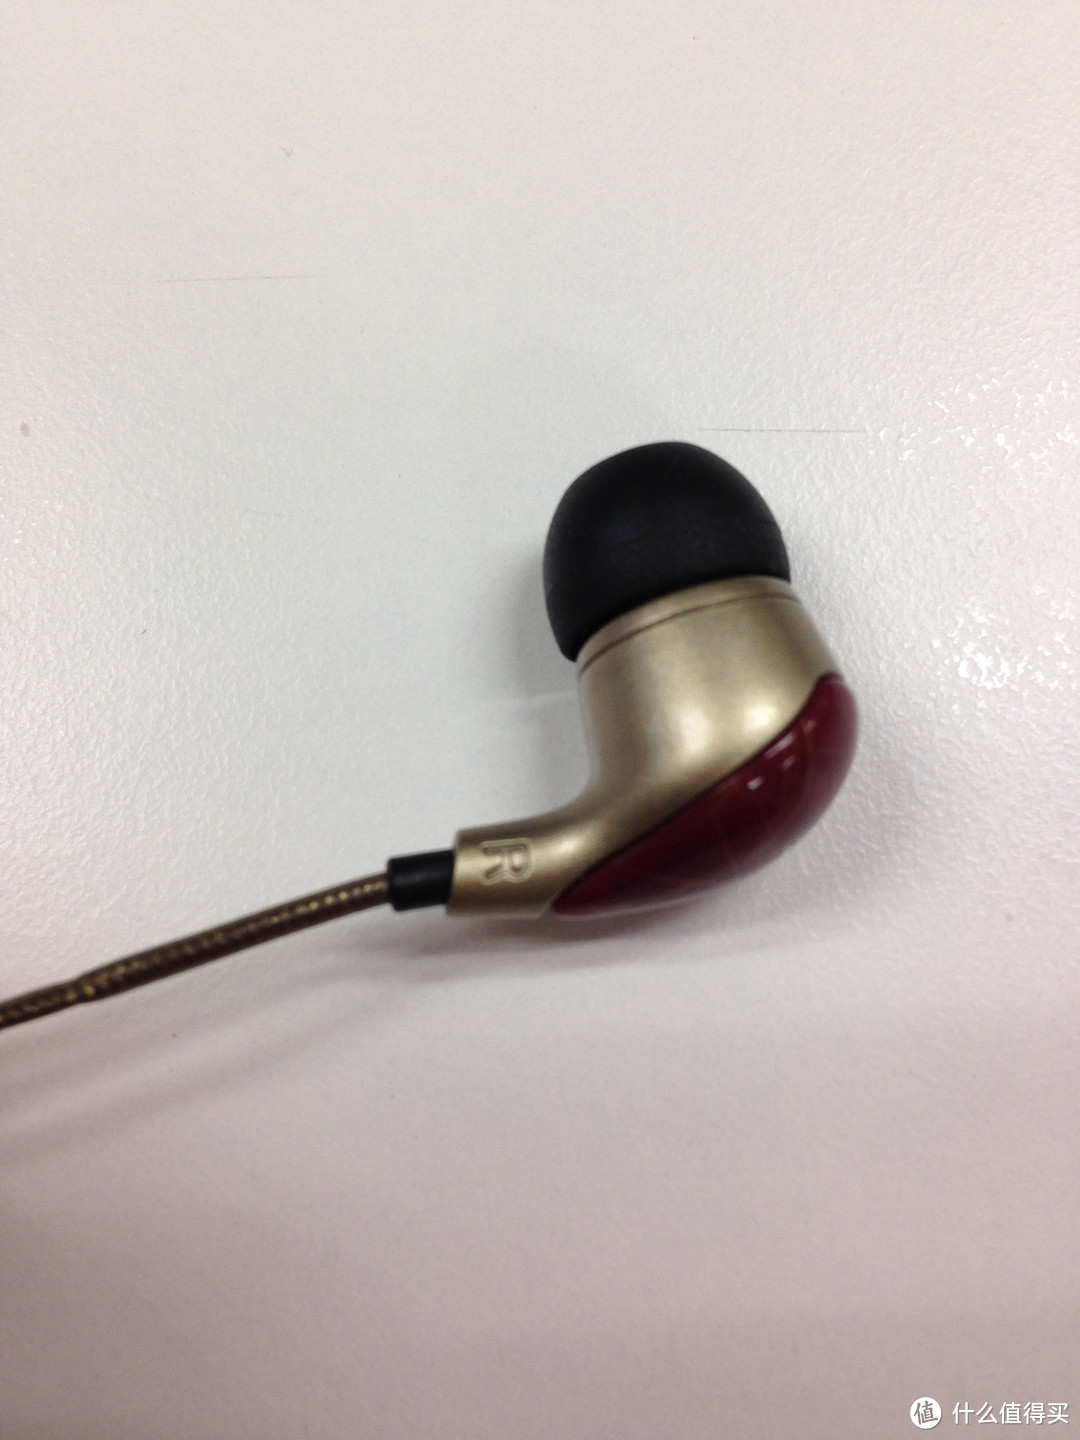 SENNHEISER 森海塞尔 CX281 入耳式耳机